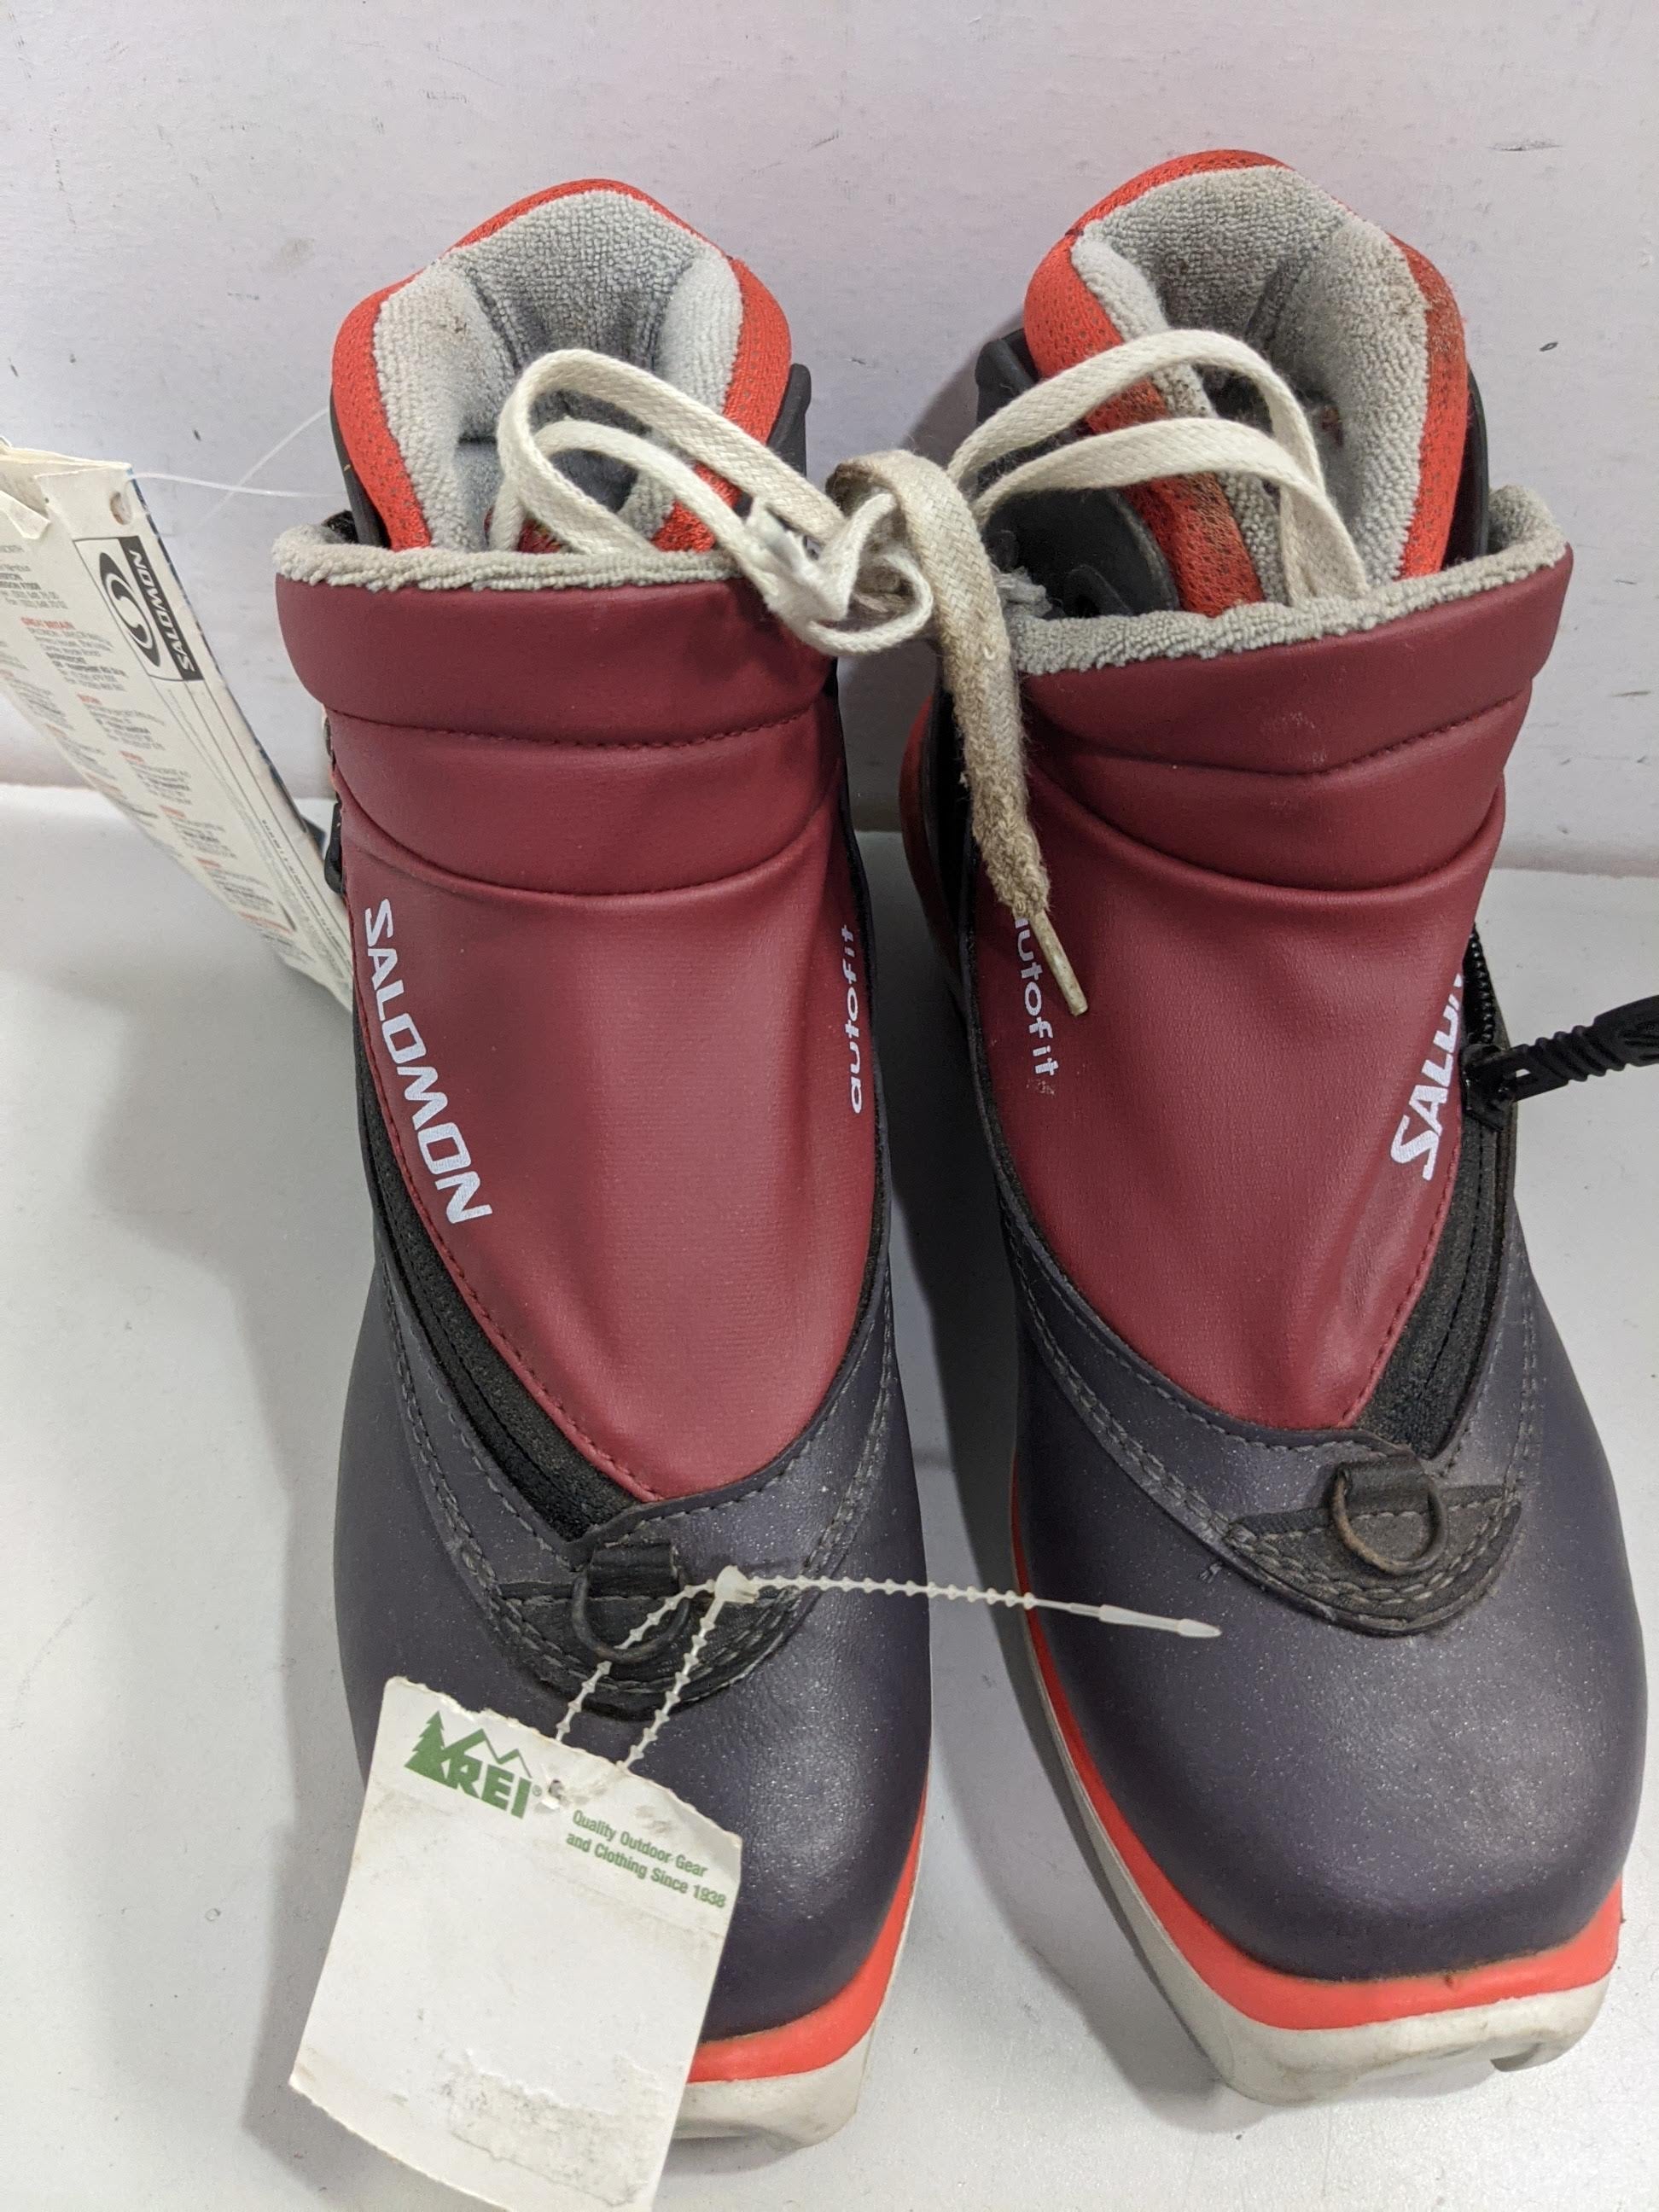 XC Vitane SNS Profil Ski Boots Size Mondo 22.5 Red Used – Sports Exchange